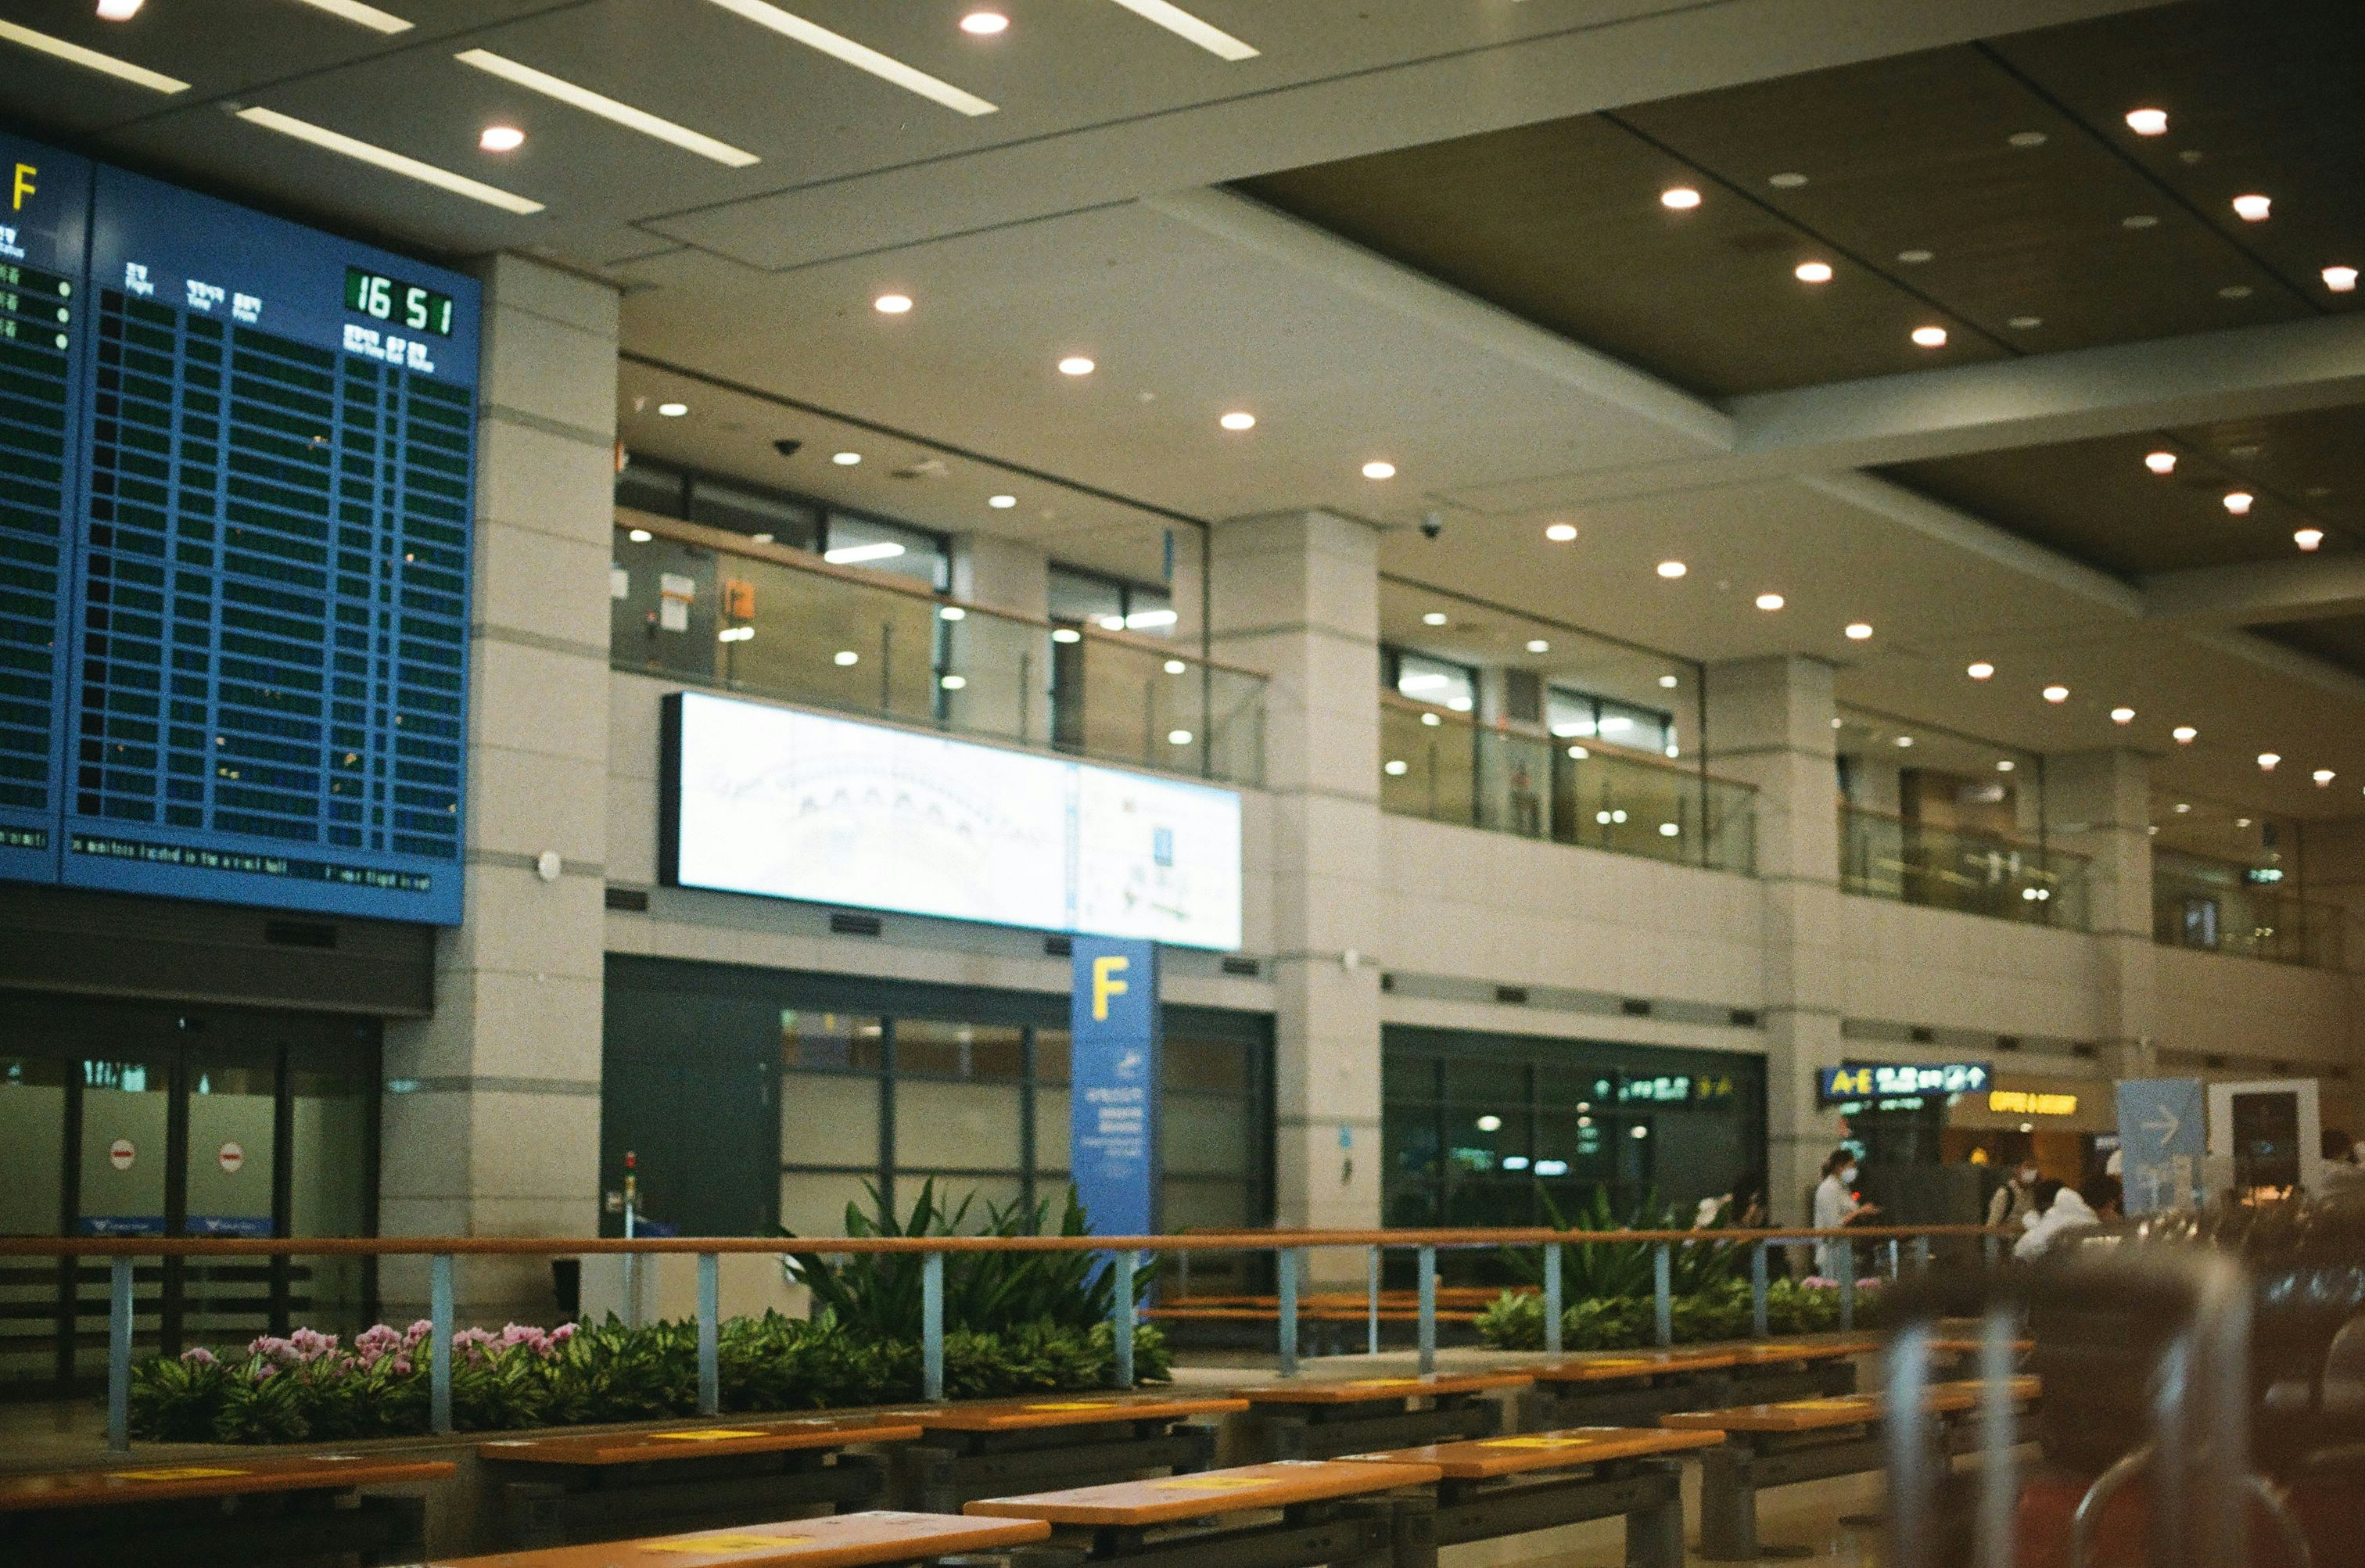 인천공항